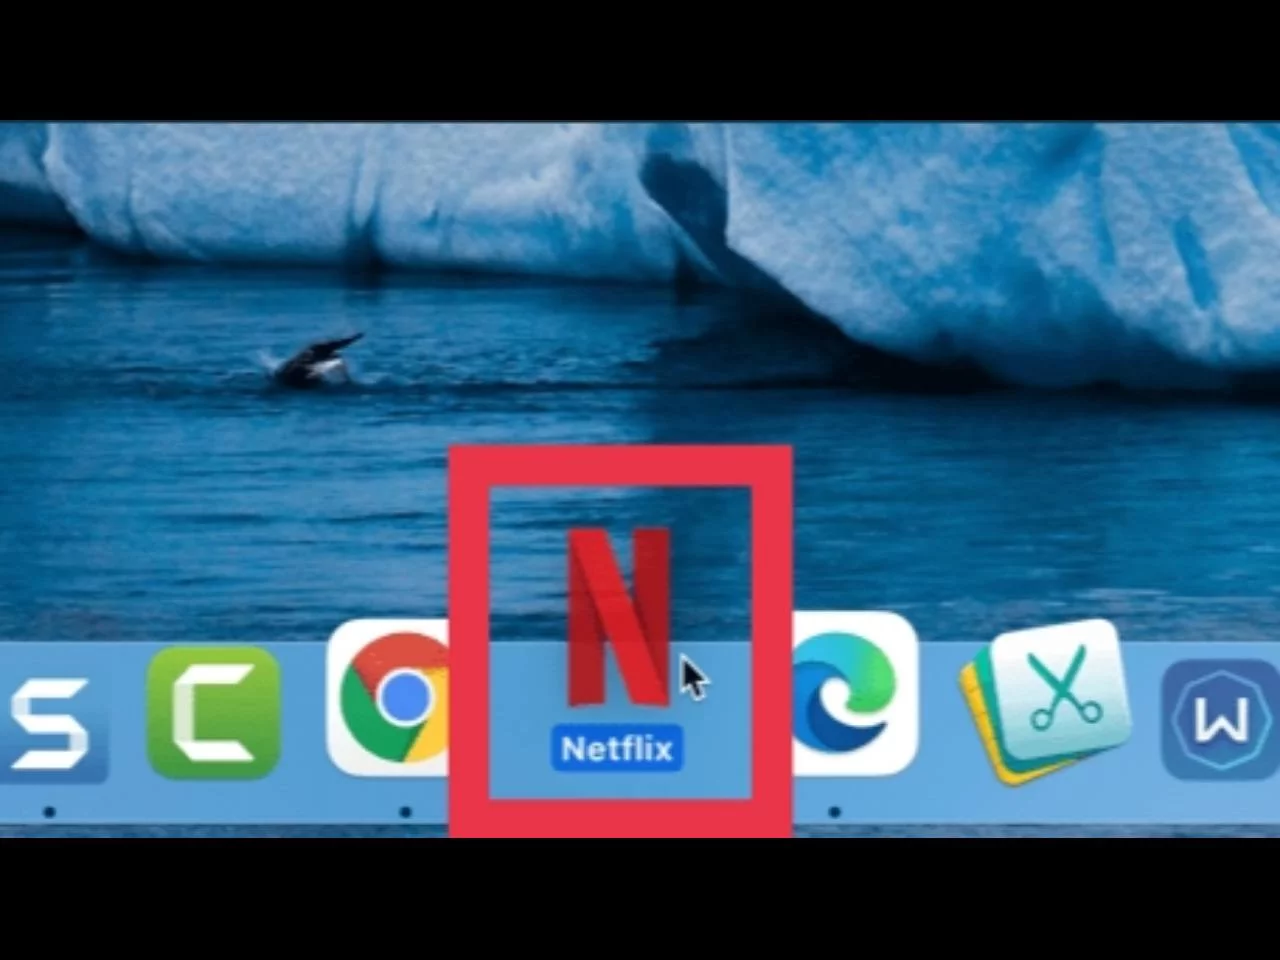 Arrastre la aplicación web de Netflix a su Dock